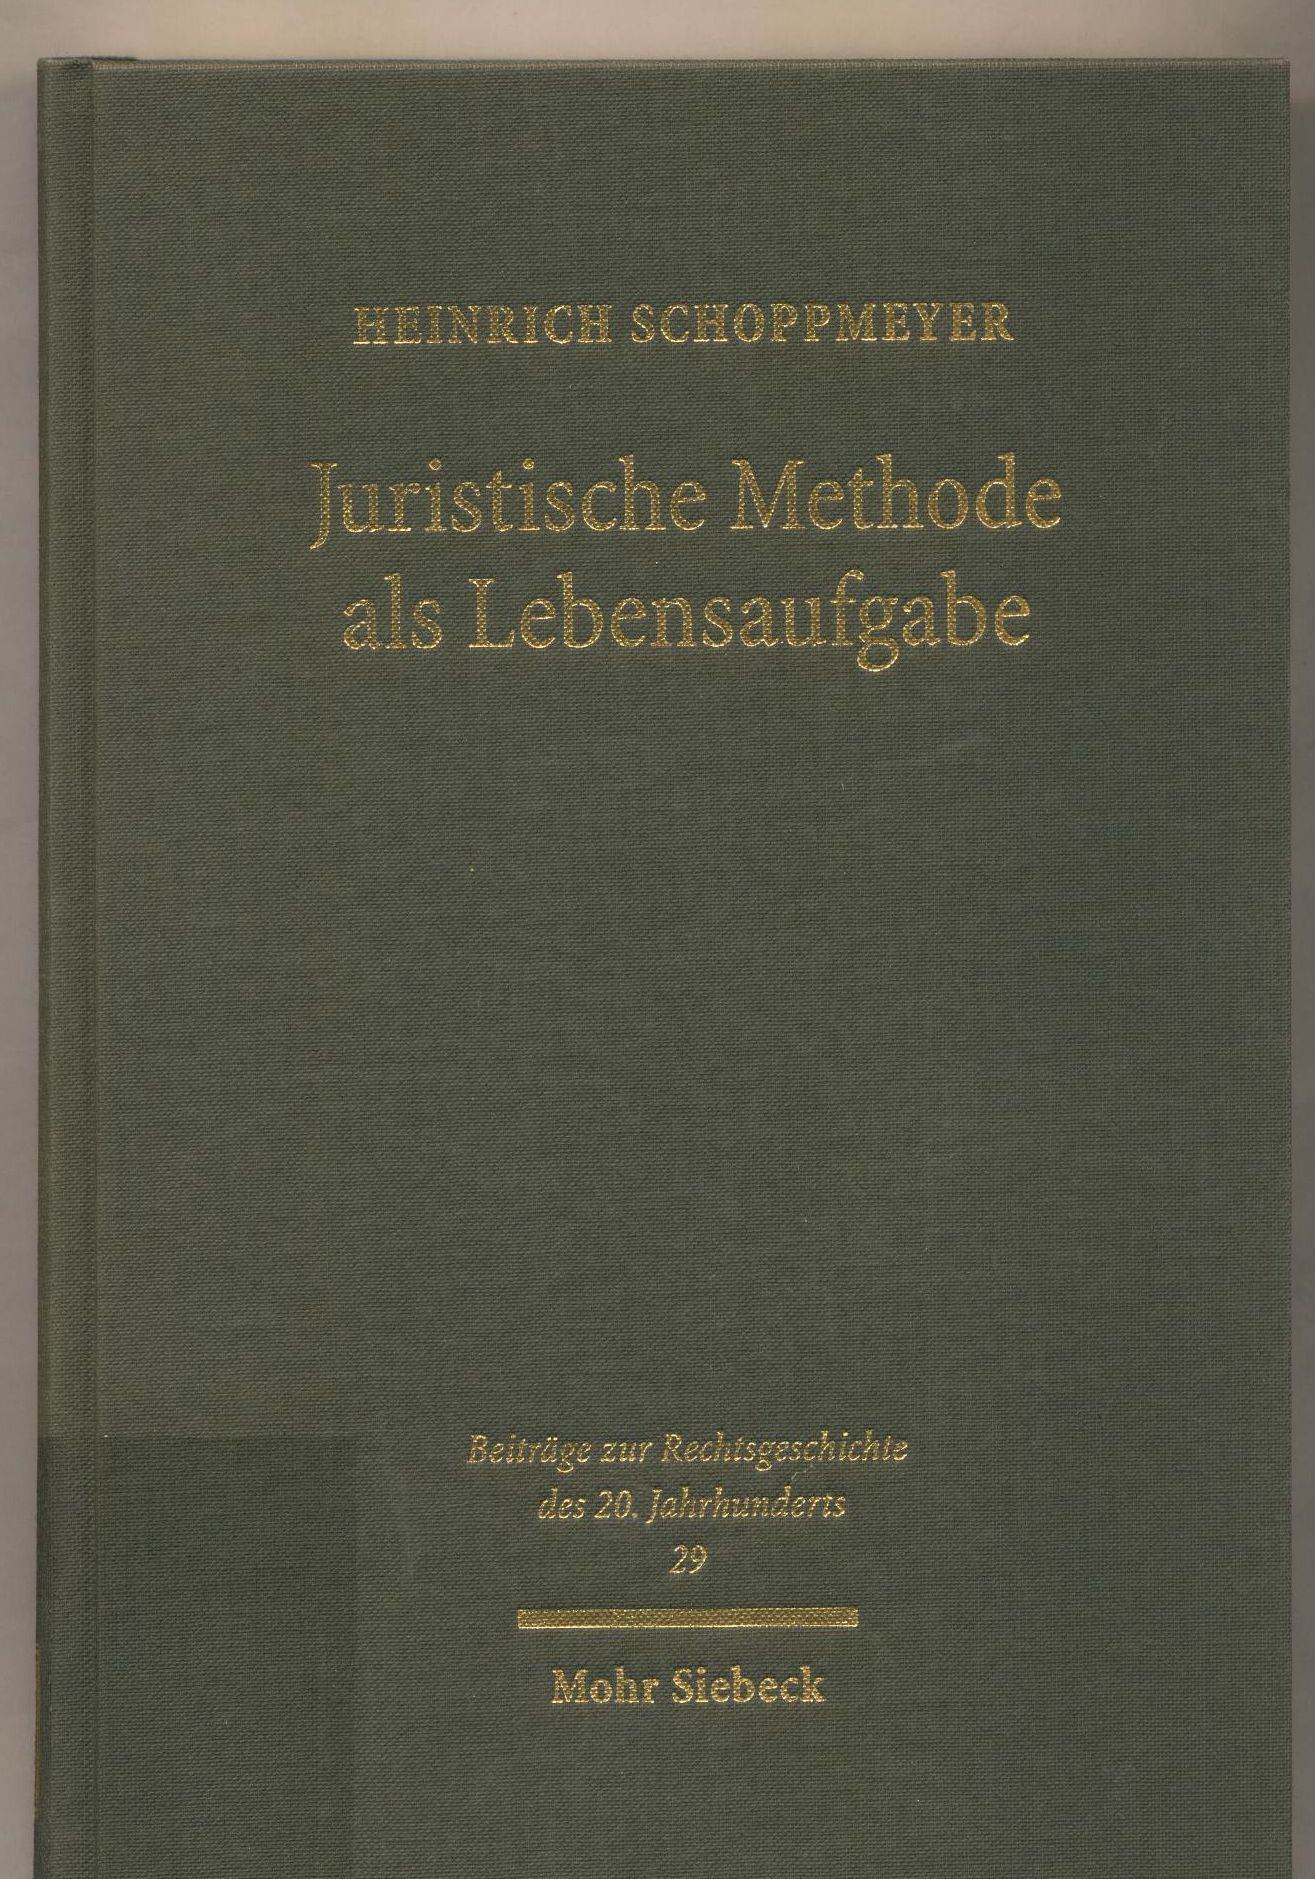 Juristische Methode als Lebensaufgabe Leben, Werk und Wirkungsgeschichte Philipp Hecks - Schoppmeyer, Heinrich